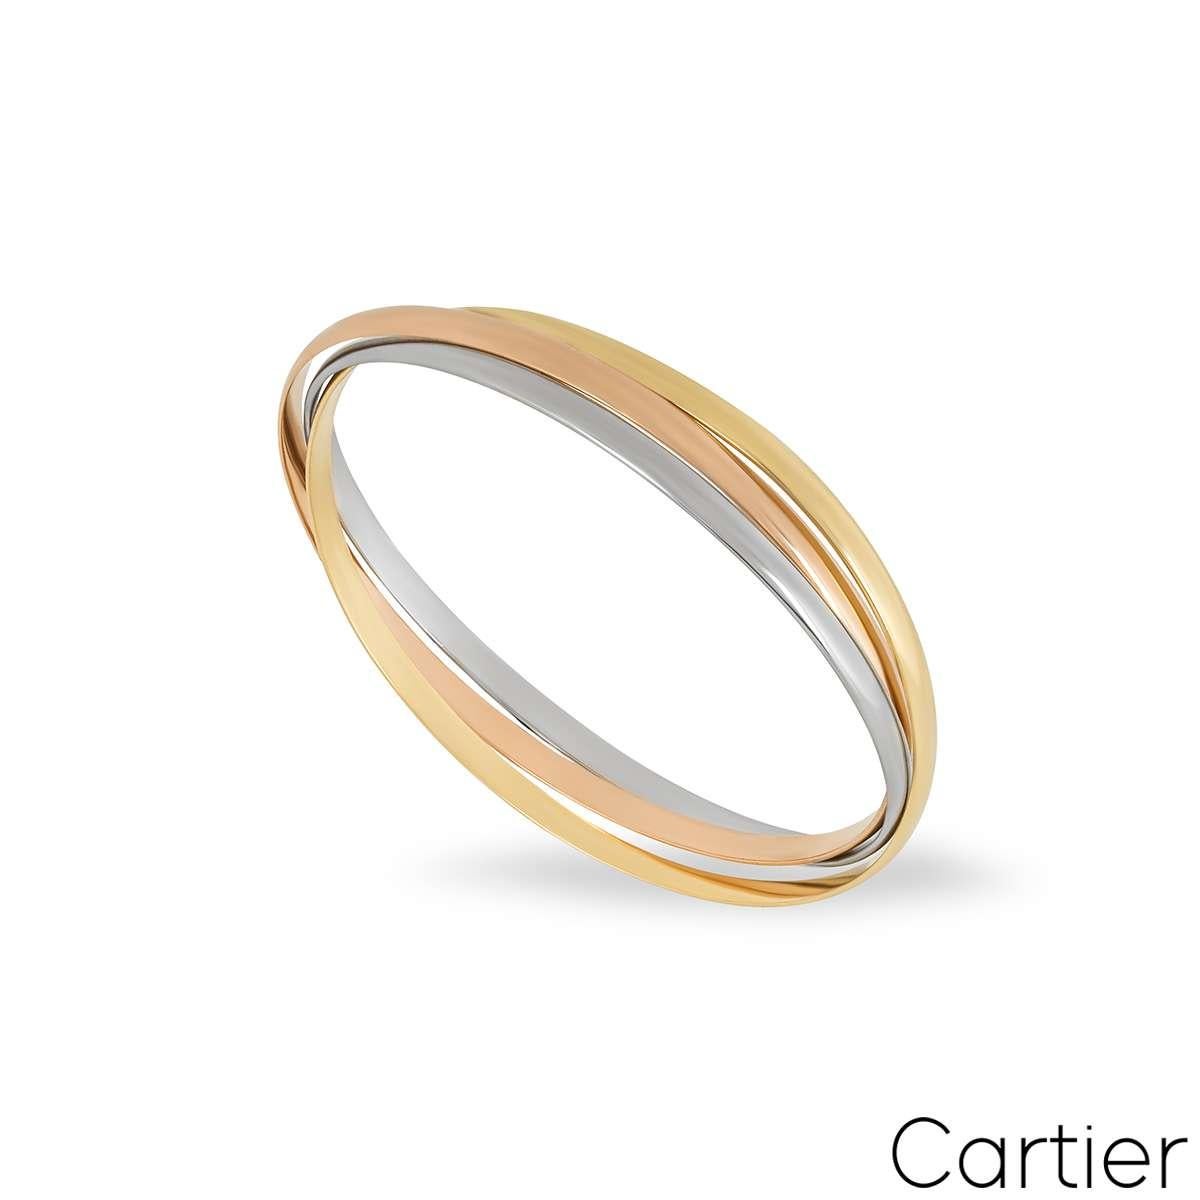 Ein Cartier SM-Armband aus 18 Karat Dreifarbgold aus der Collection Trinity de Cartier. Das Armband besteht aus drei ineinander verschlungenen Bändern aus 18 Karat Gelb-, Weiß- und Roségold, die jeweils 2,8 mm breit sind. Dieses Armband hat die